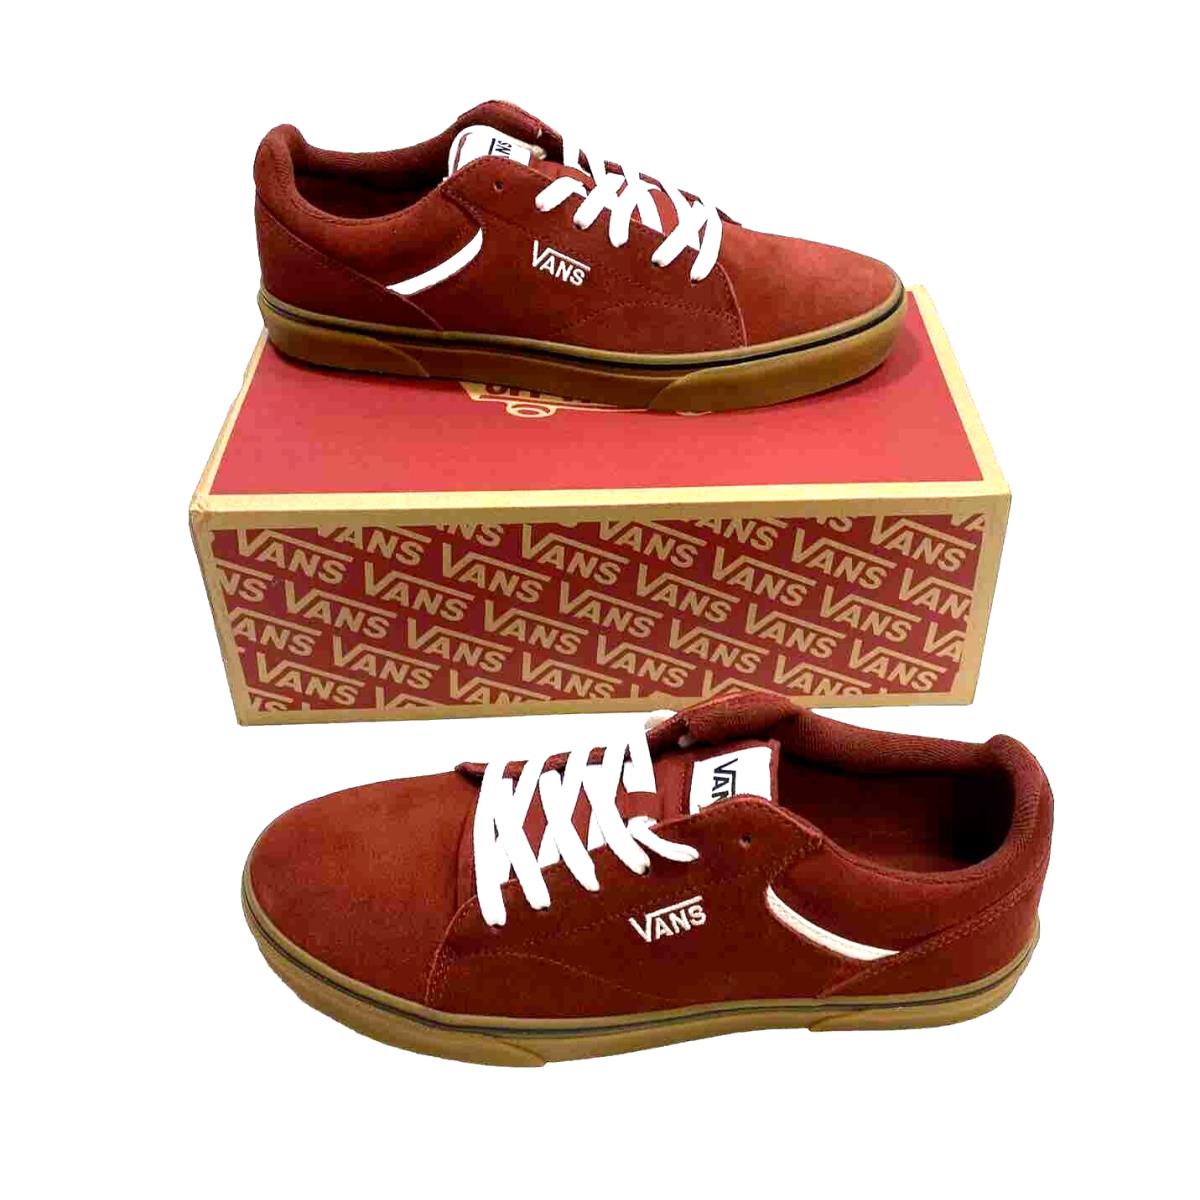 Vans Seldan Lace Up Dark Red Gum Sidewall Skate Sneaker Men 10.5